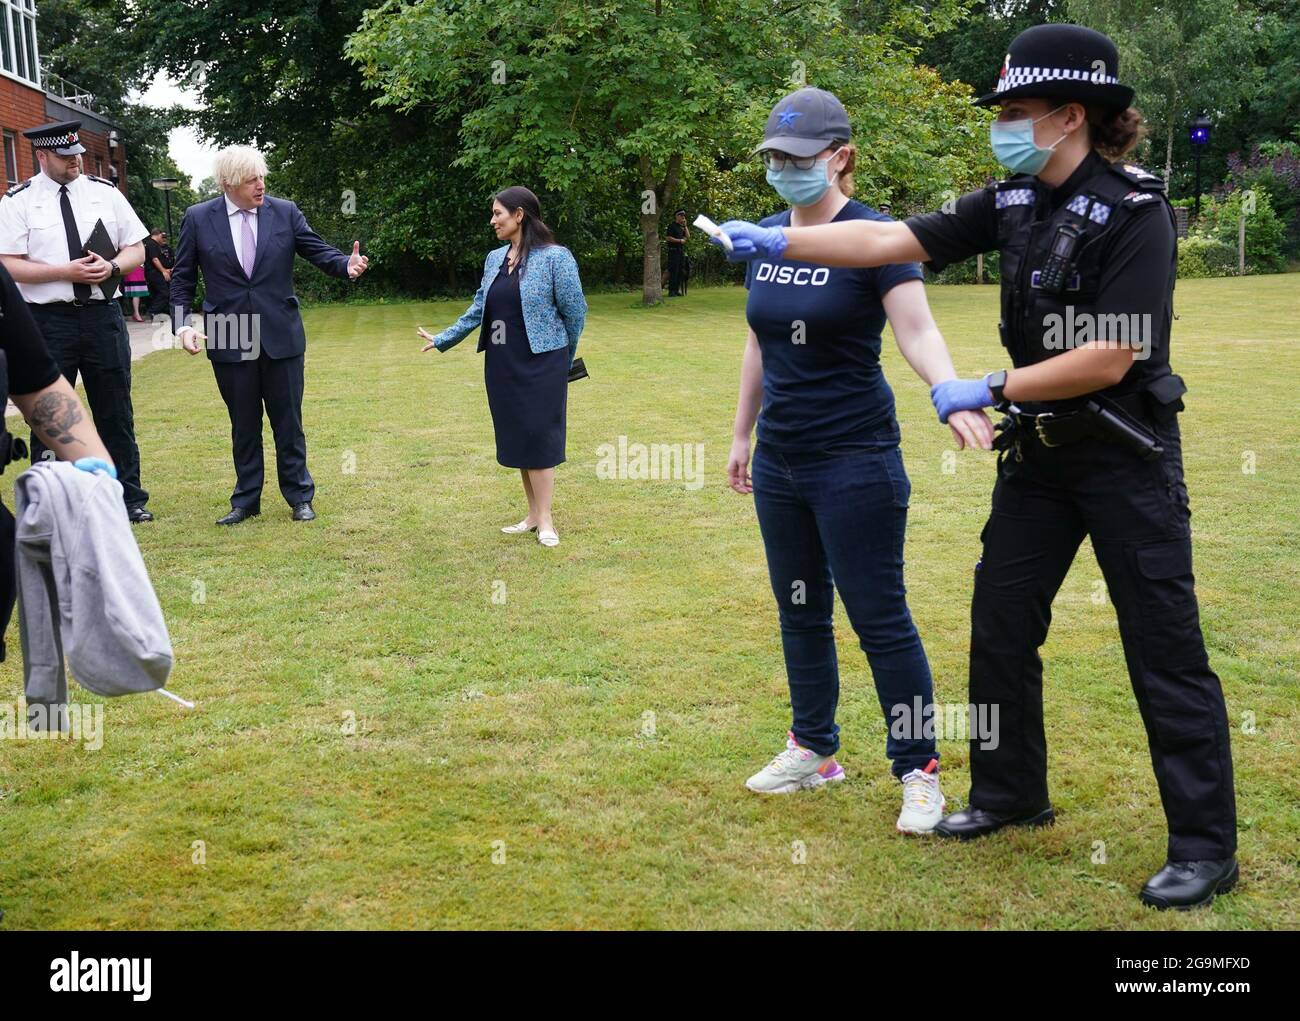 Le Premier ministre Boris Johnson et le secrétaire d'État à l'intérieur, Priti Patel, regardent un exercice de recherche au cours d'une visite au quartier général de la police de Surrey à Guildford, dans le Surrey, pour coïncider avec la publication du Plan de lutte contre le crime du gouvernement. Date de la photo: Mardi 27 juillet 2021. Banque D'Images